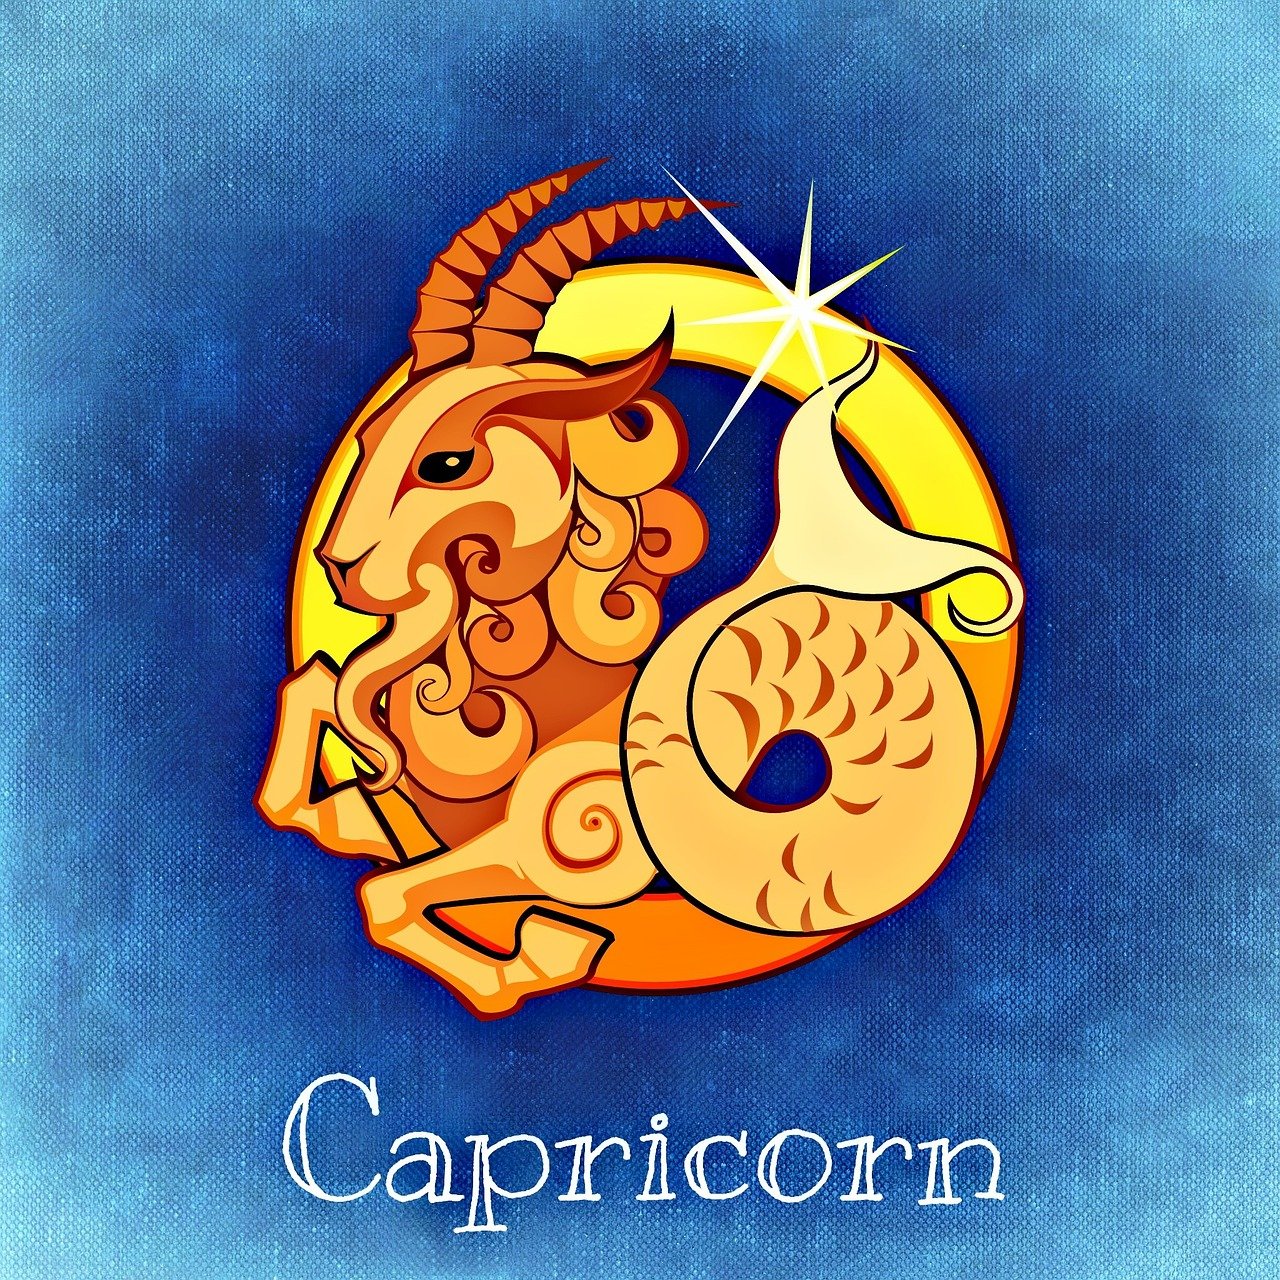 z1_capricorn